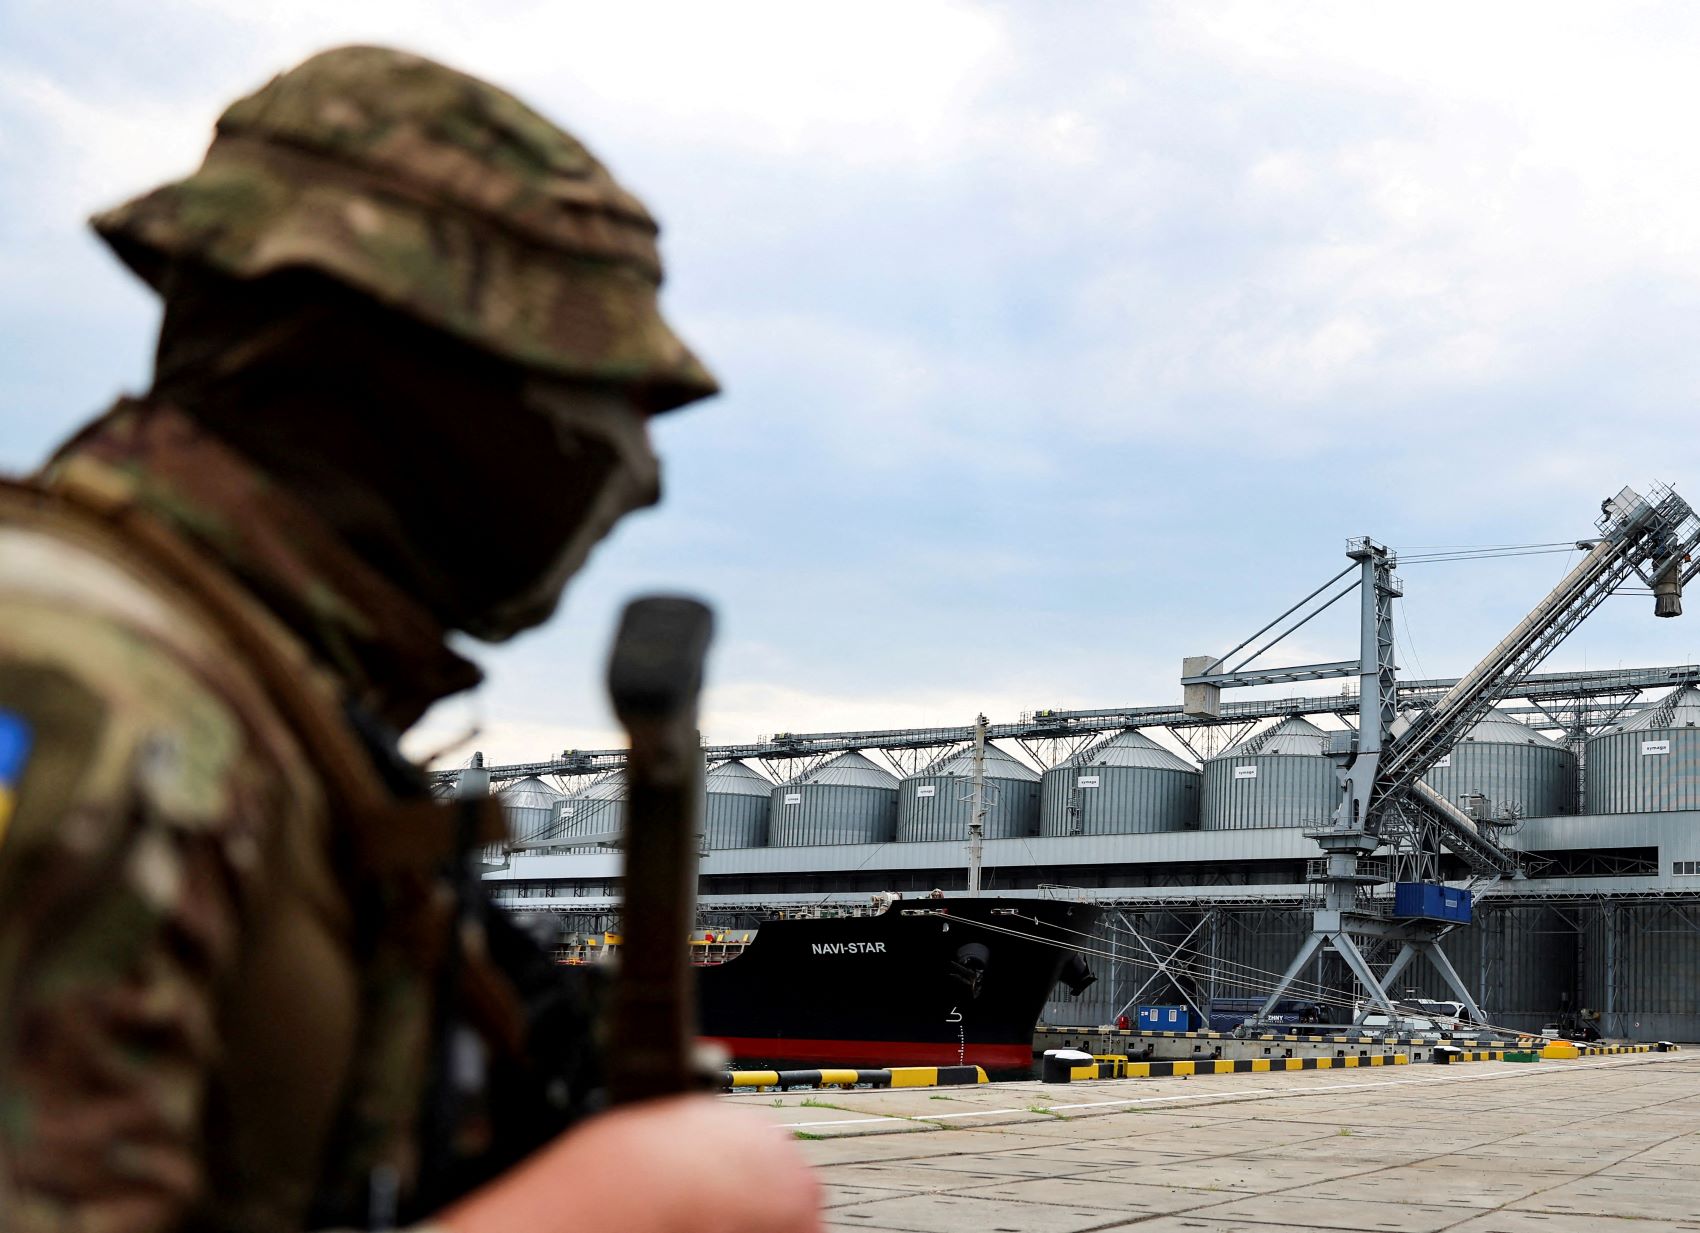 جندي أوكراني أمام إهراء للقمح في ميناء أوديسا على البحر الأسود بانتظار إشارة من الأمم المتحدة وتركيا لإبحار أول باخرة تحمل الحبوب إلى الخارج وسط الحرب مع روسيا بتاريخ 29 يوليو 2022